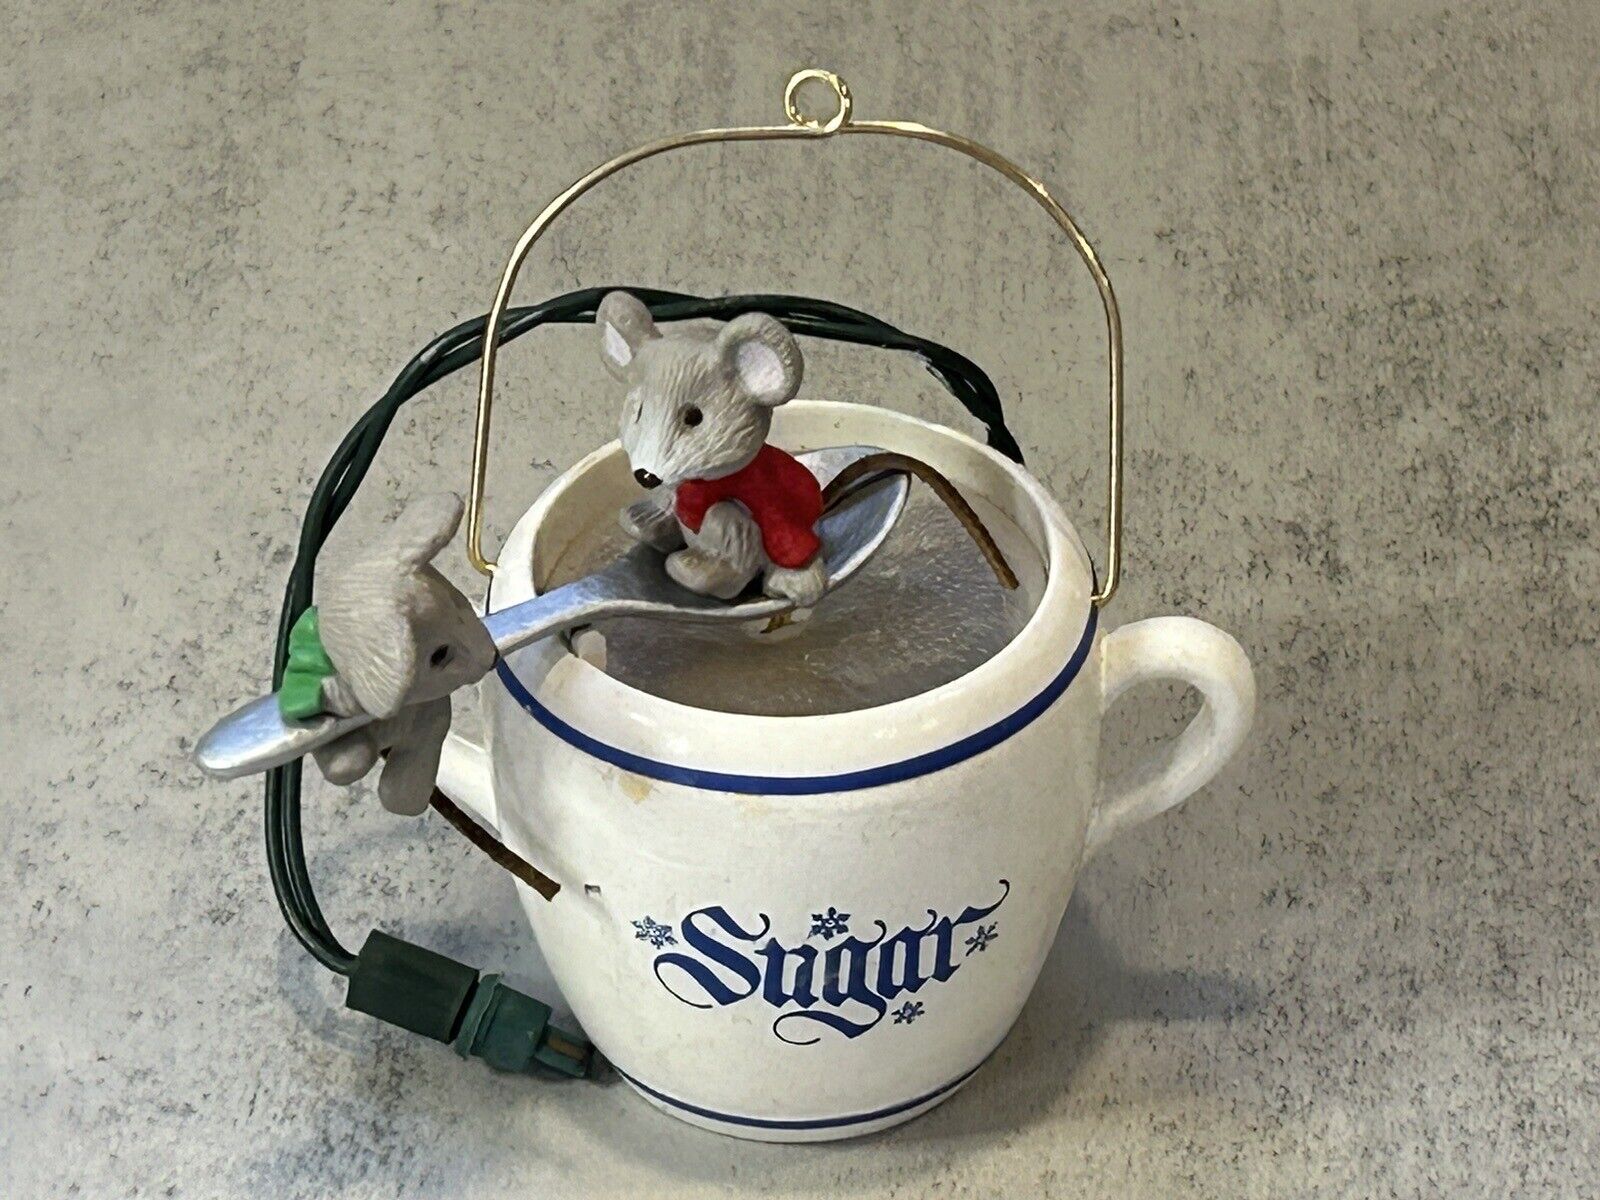 1989 Hallmark Keepsake Ornament Loving Spoonful Tea Mouse Light Motion UNTESTED